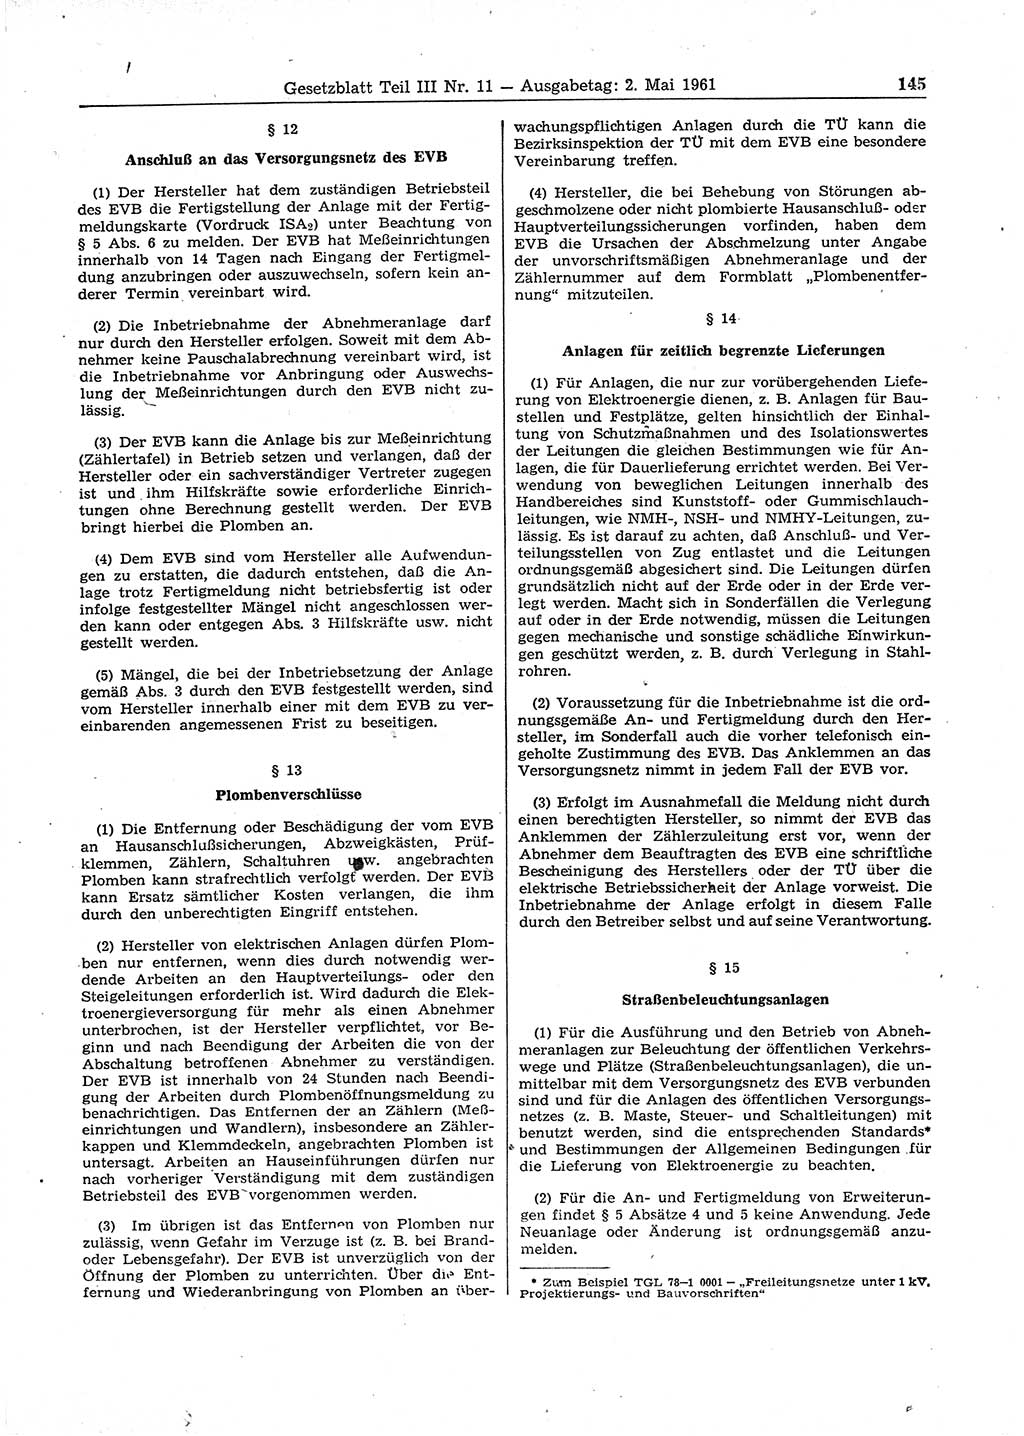 Gesetzblatt (GBl.) der Deutschen Demokratischen Republik (DDR) Teil ⅠⅠⅠ 1961, Seite 145 (GBl. DDR ⅠⅠⅠ 1961, S. 145)